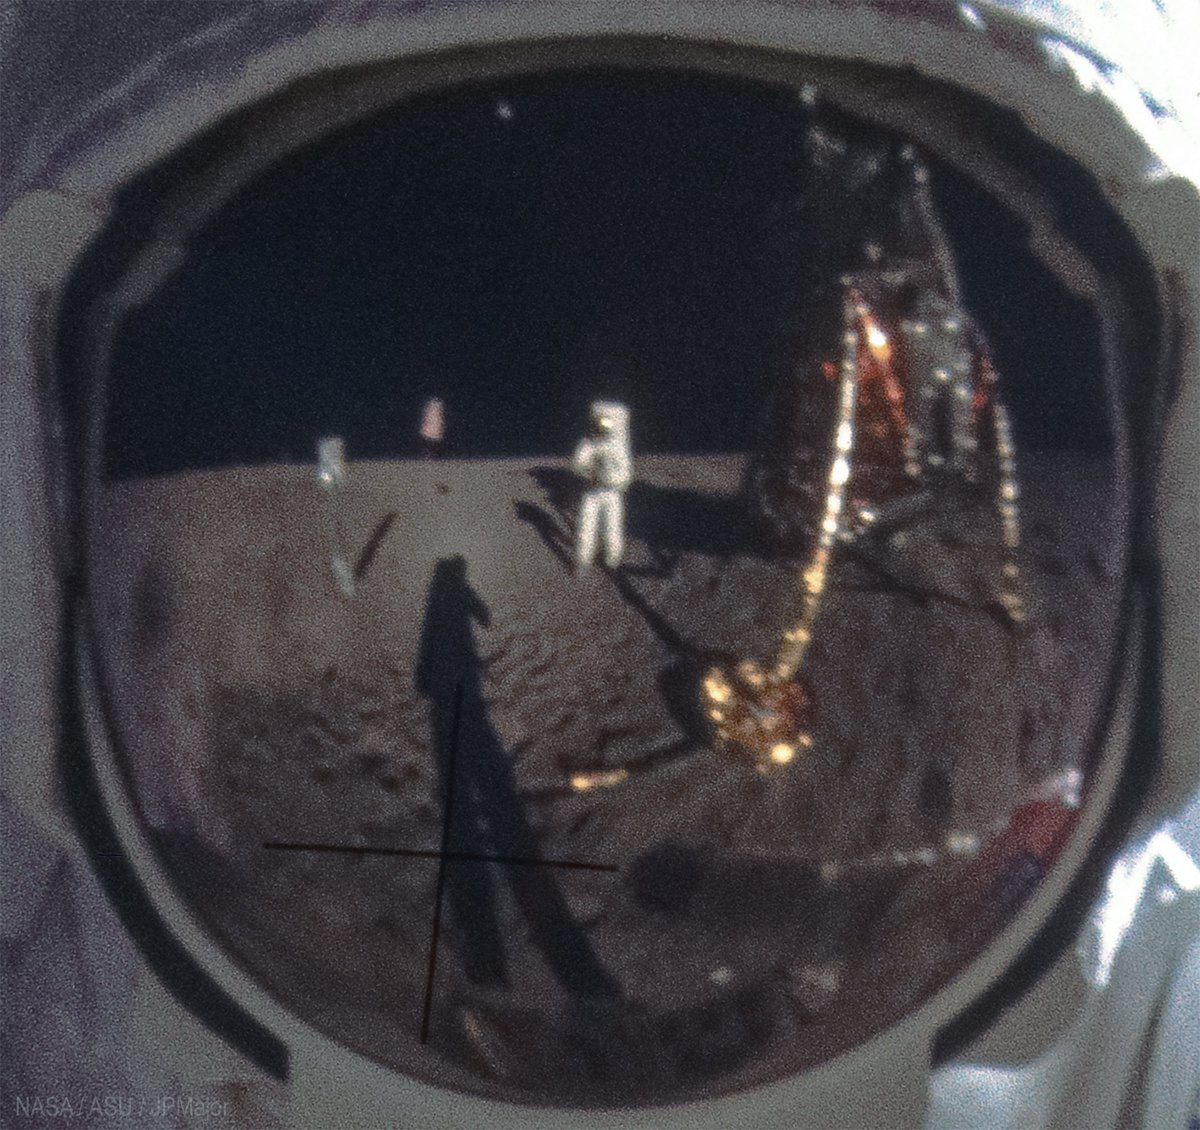 L'une des photos les plus iconique de l'histoire de l'aérospatial est la n° AS11-40-5903 montrant Buzz Aldrin photographié par Neil Armstrong.

Il y a peu de photos d'Armstrong car c'est lui qui était derrière l'appareil.
Mais on le voit très bien dans le casque d'Aldrin.

1/3